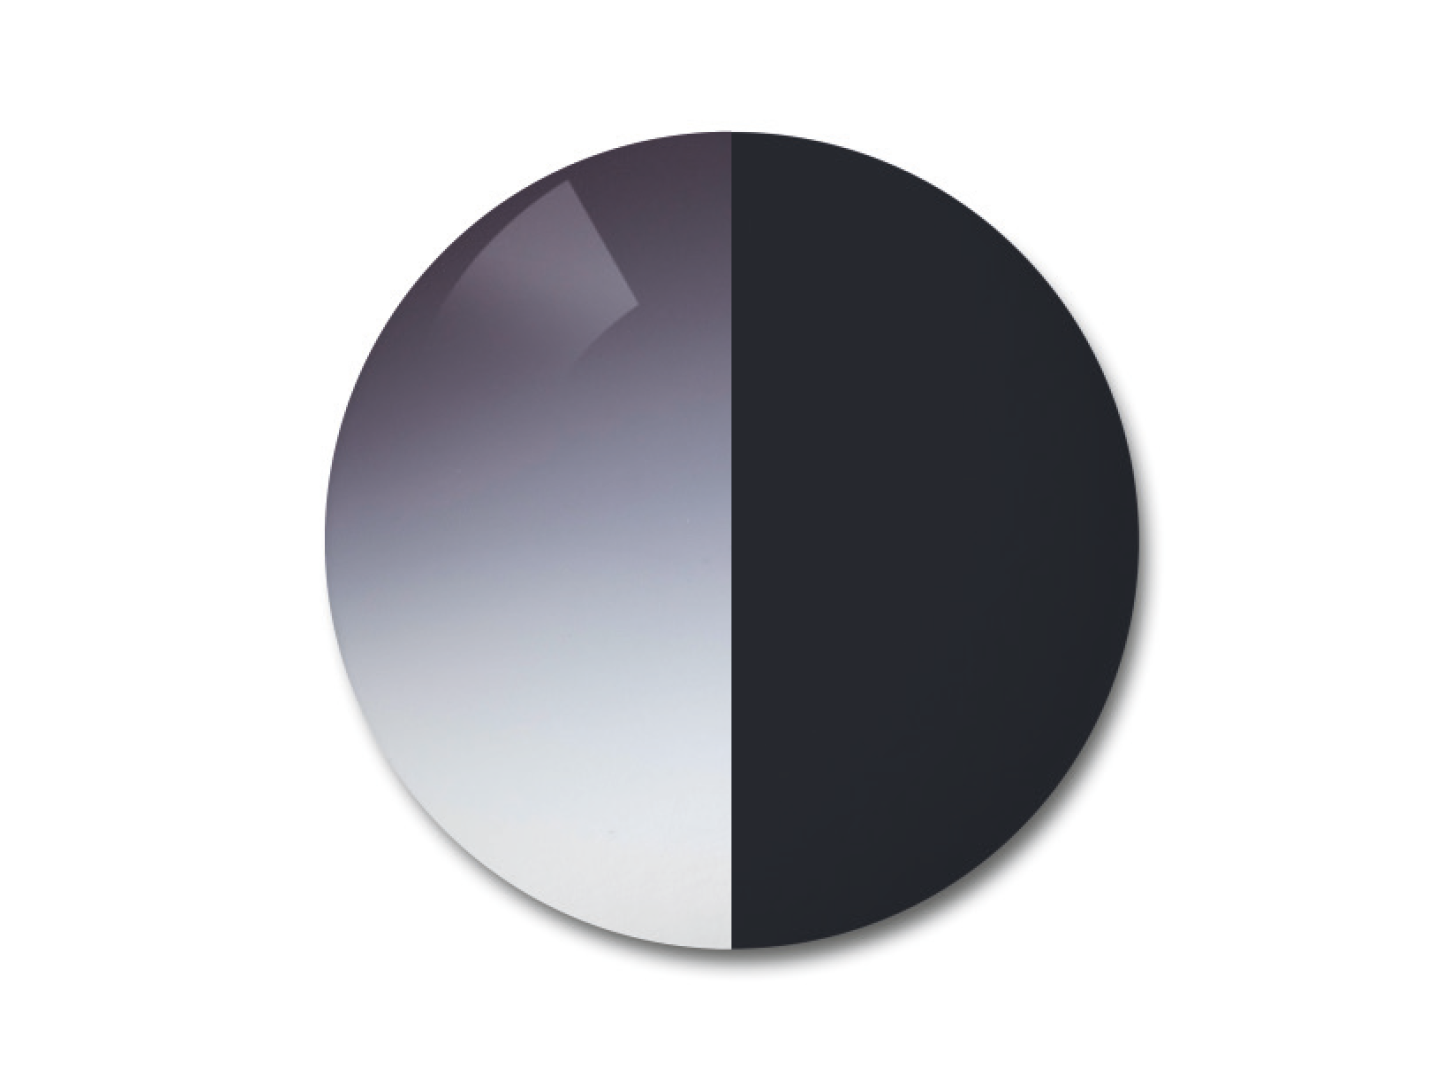 Ilustración de la lente fotocromática ZEISS AdaptiveSun en la opción en gradación de gris 